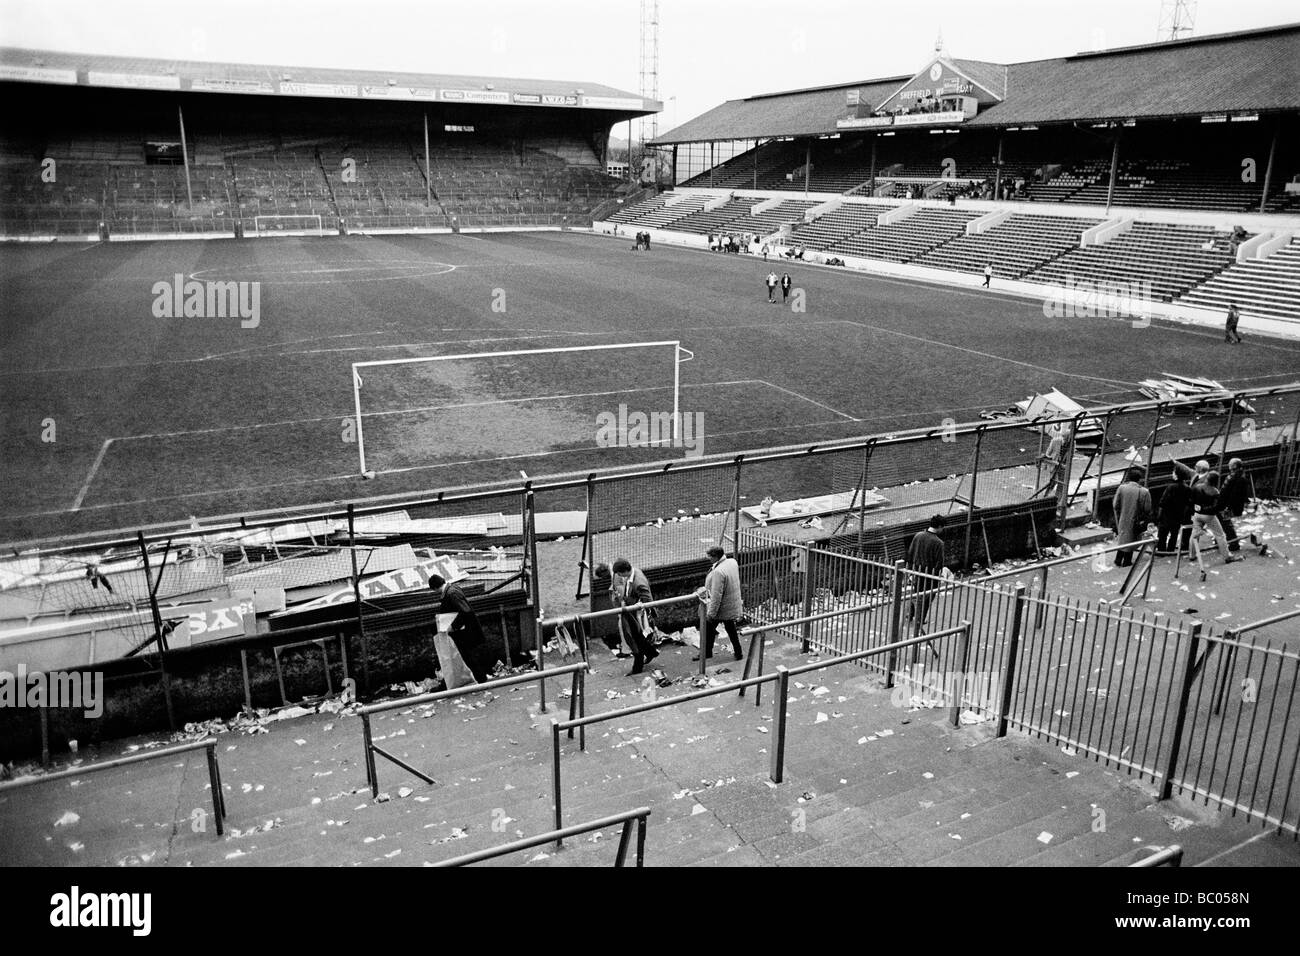 Le stade de football Hillsborough disaster 15 avril 1989 lors de la demi-finale de la FA Cup entre Liverpool et Nottingham Forest Banque D'Images